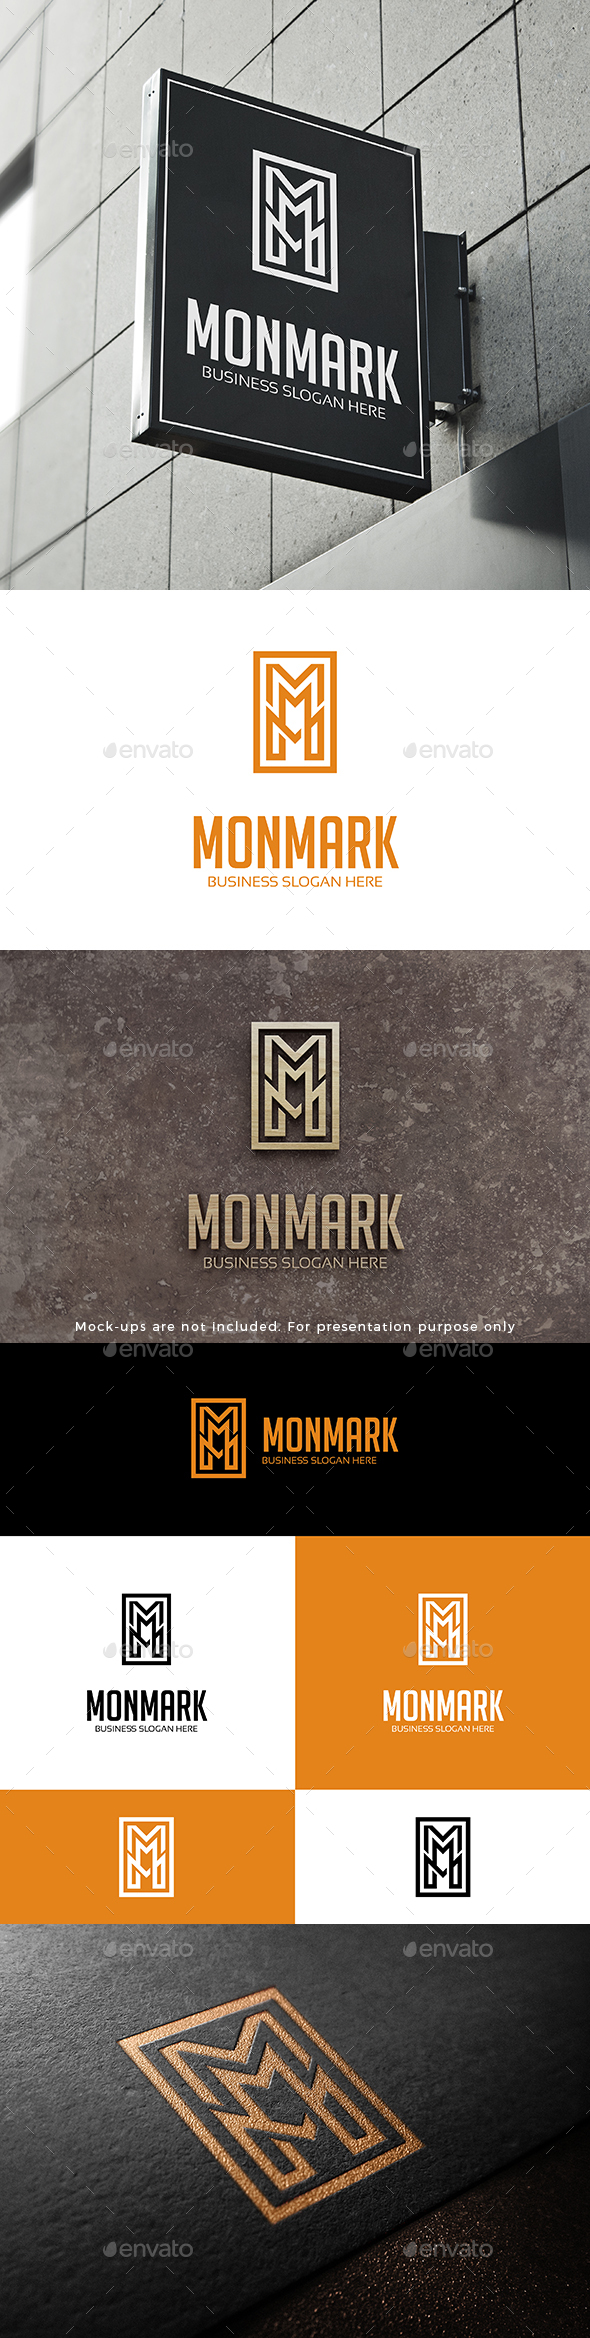 Monogram Lettermark M MM or MMM Logo